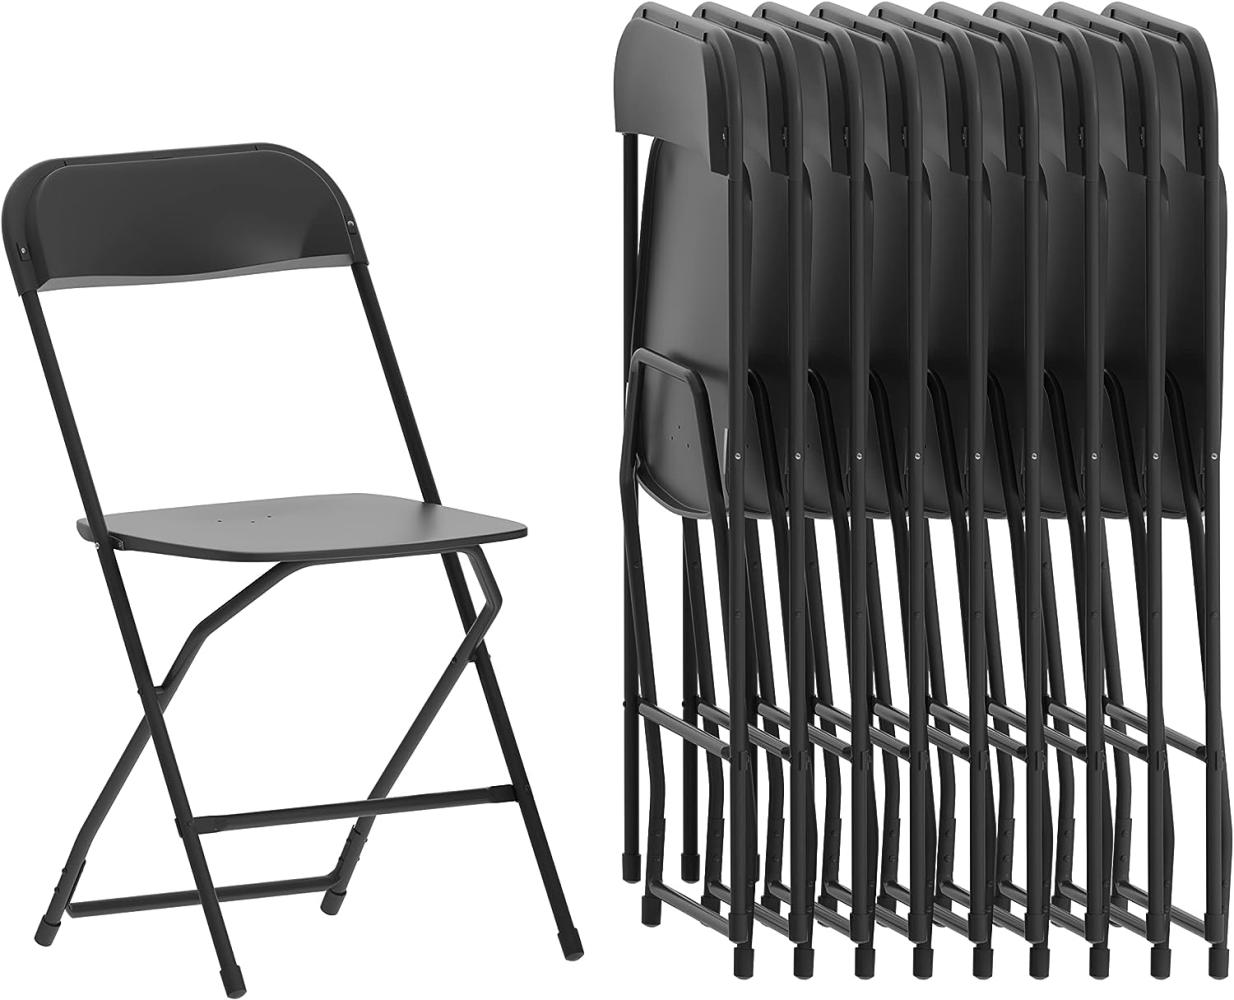 Flash Furniture Klappstuhl HERCULES aus Kunststoff – Leichter Stuhl zum Klappen für Gäste oder Veranstaltungen – Praktischer Küchenstuhl auch für draußen geeignet – 10er-Set – Schwarz Bild 1